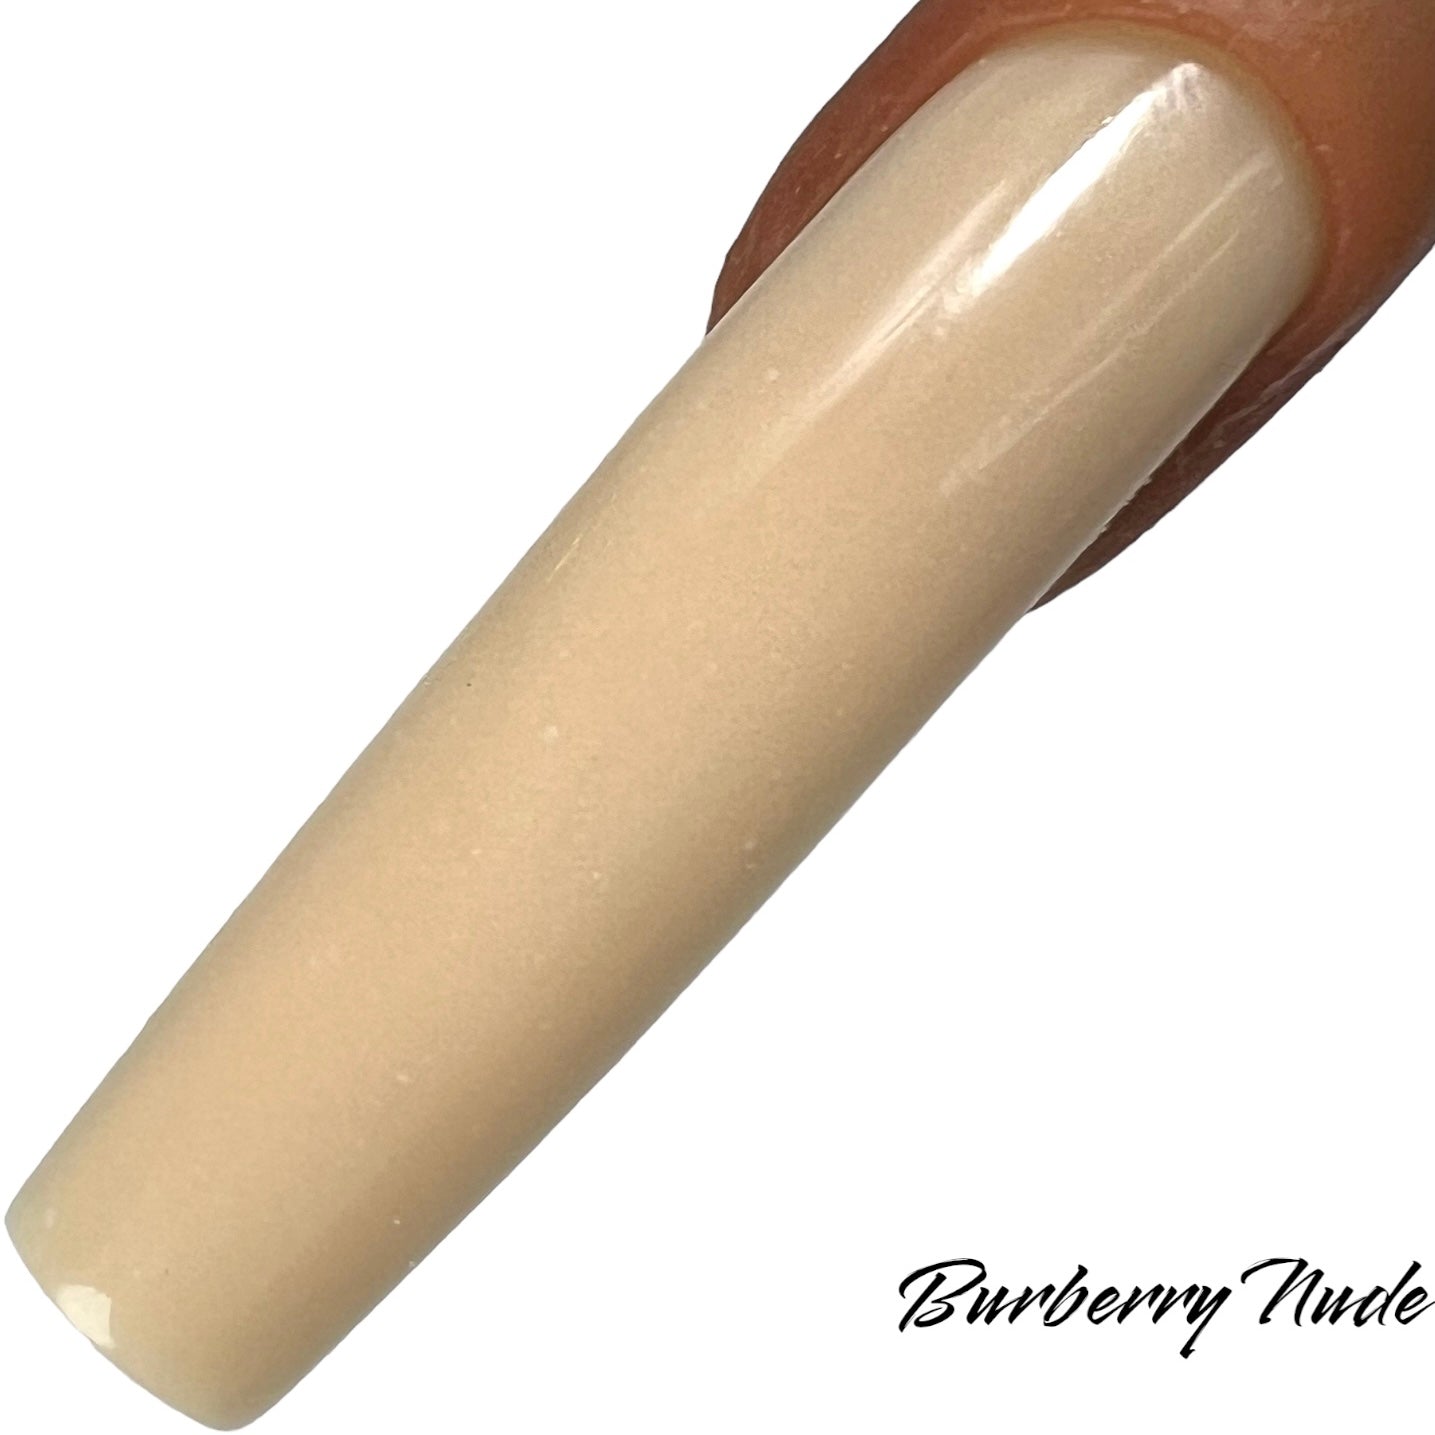 Burberry Nude